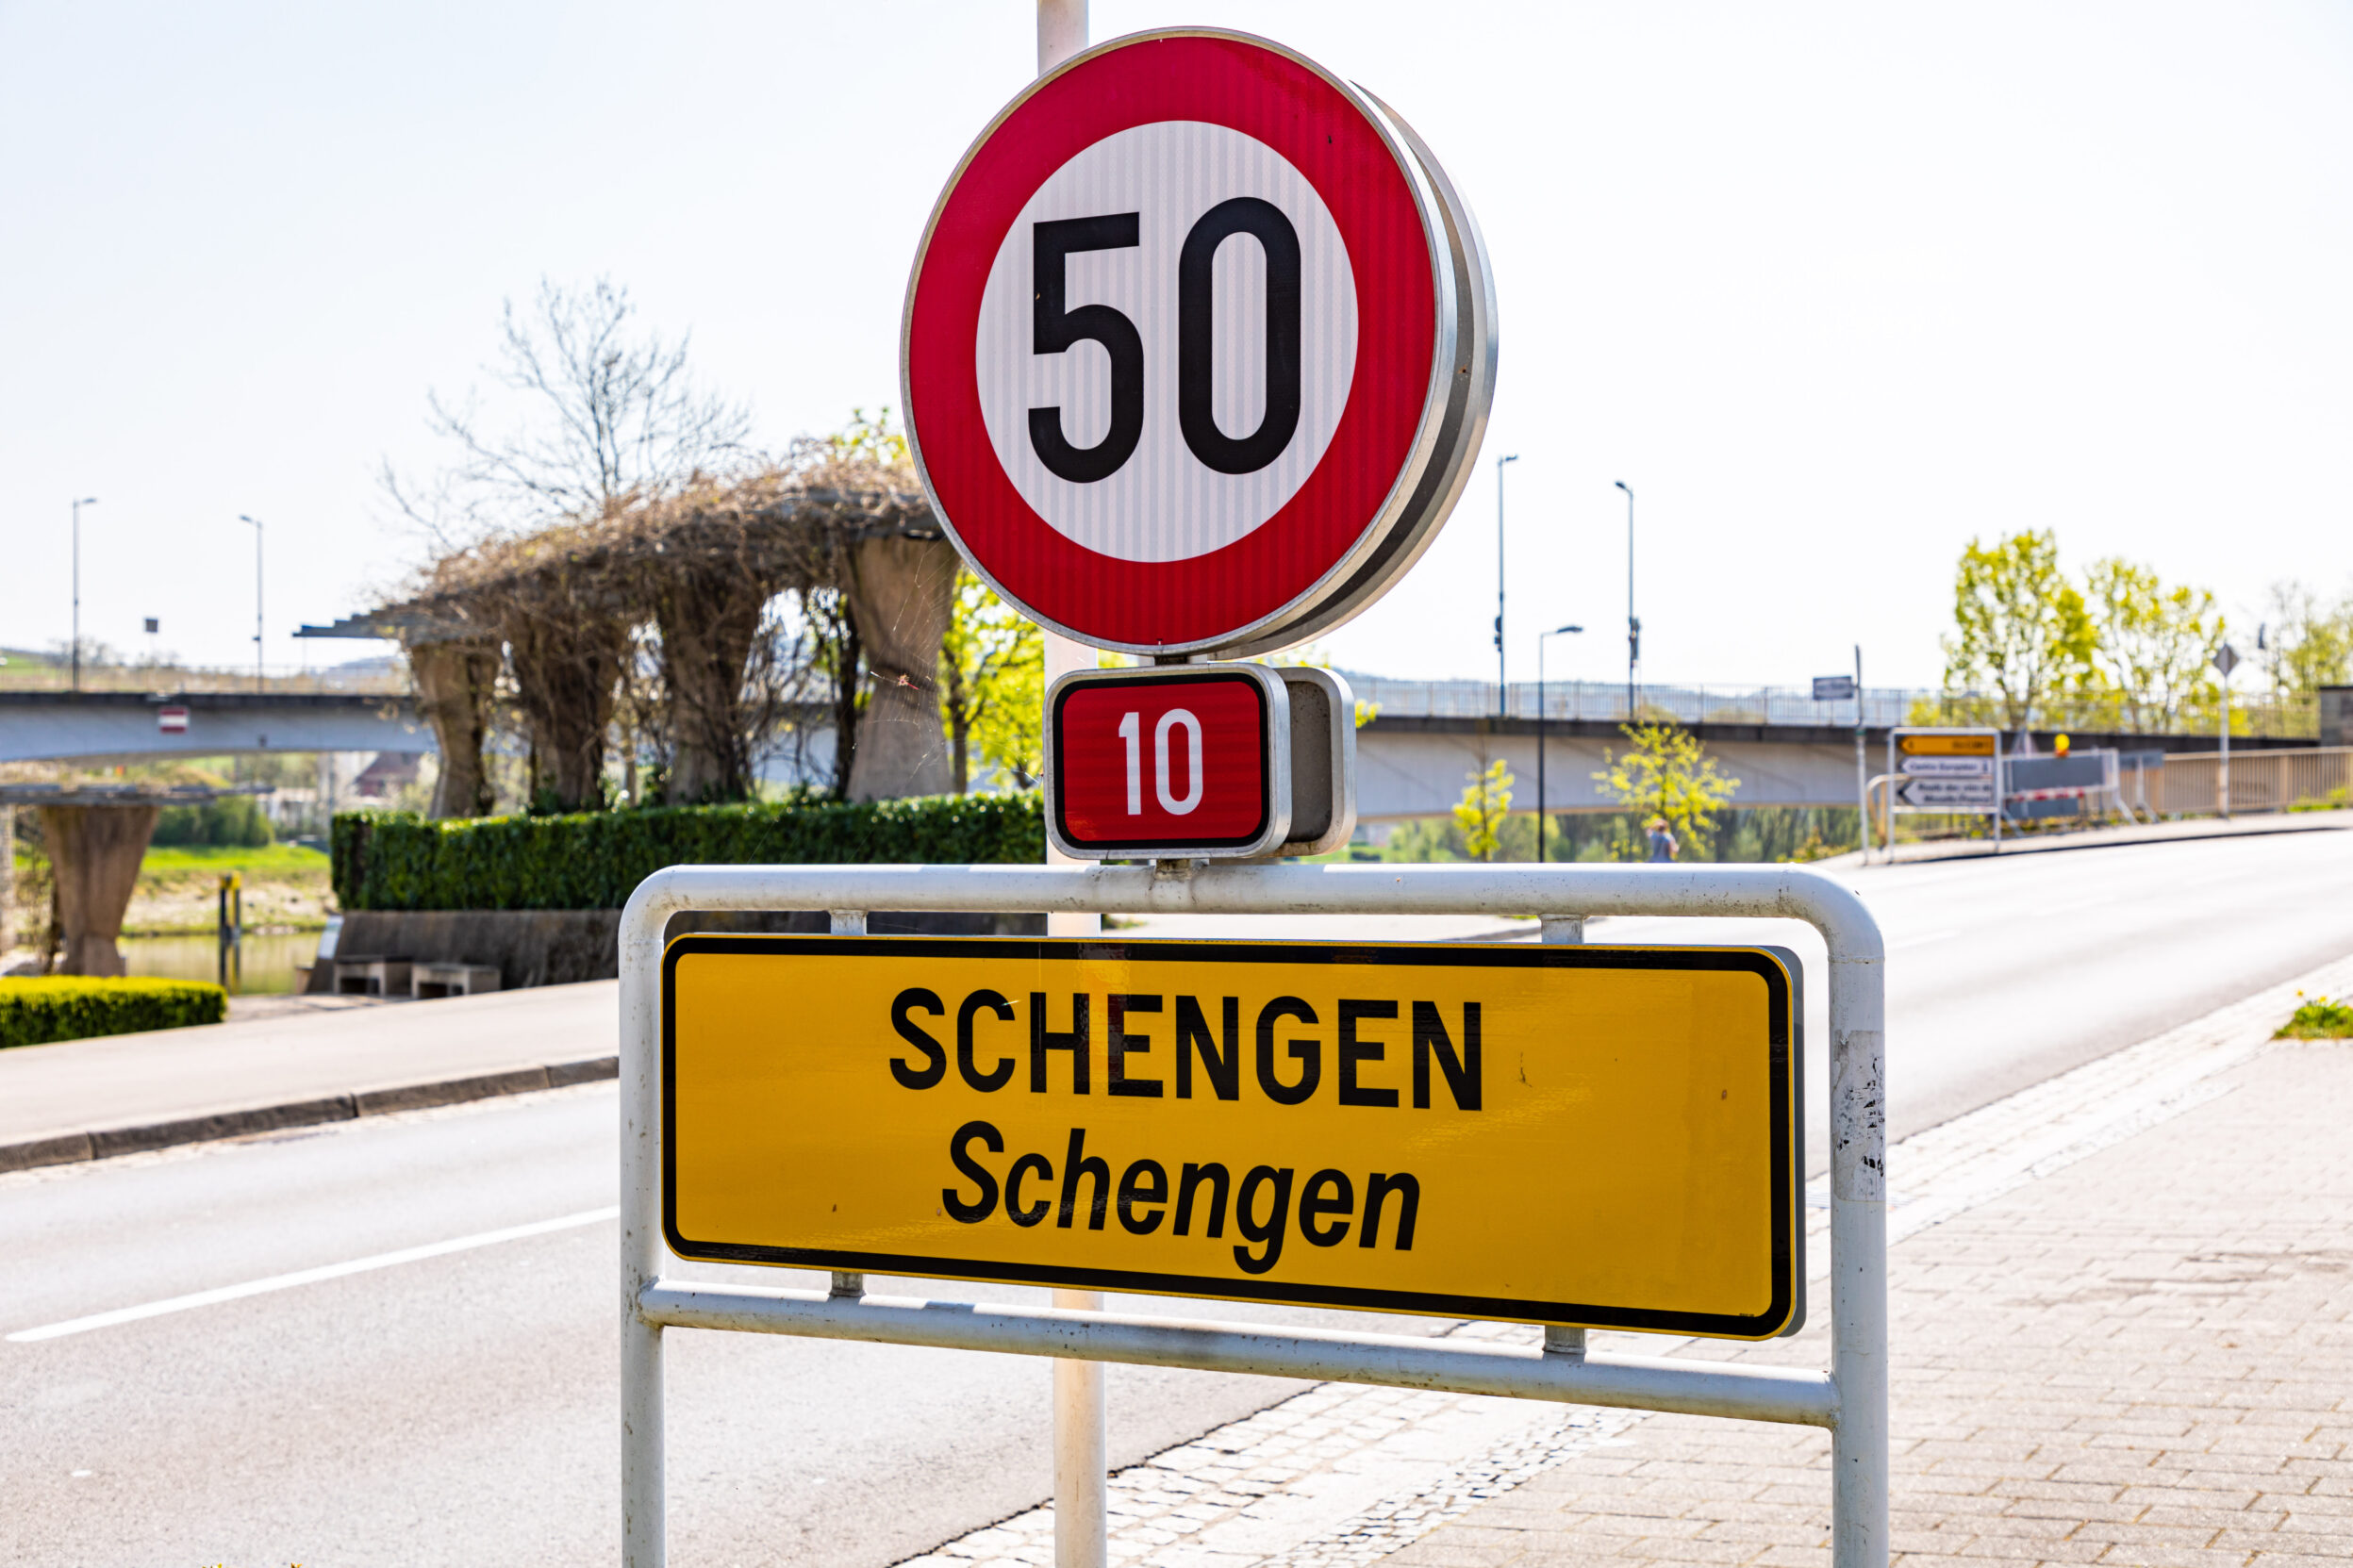 Vrij verkeer naar Kroatië mogelijk door toetreding Schengenzone